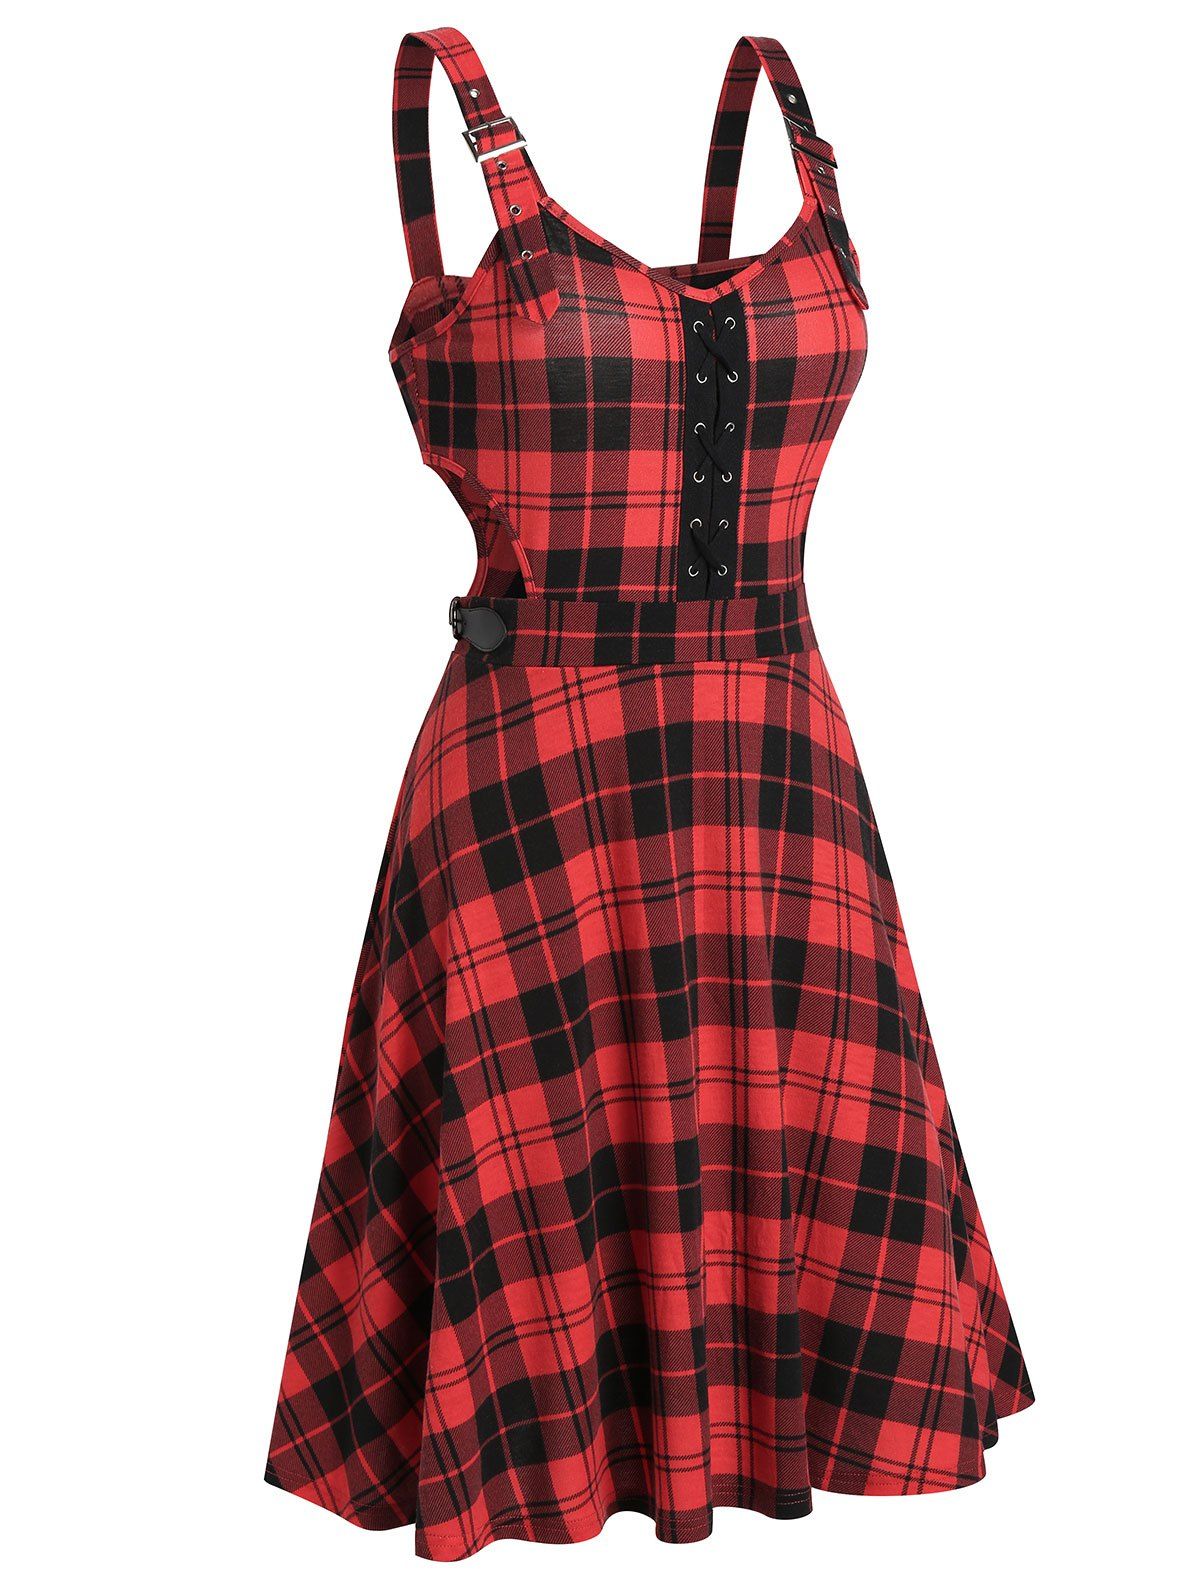 Plaid Cut Out A Line Mini Dress Lace Up Buckle Strap Vintage Cami Dress - LAVA RED XL